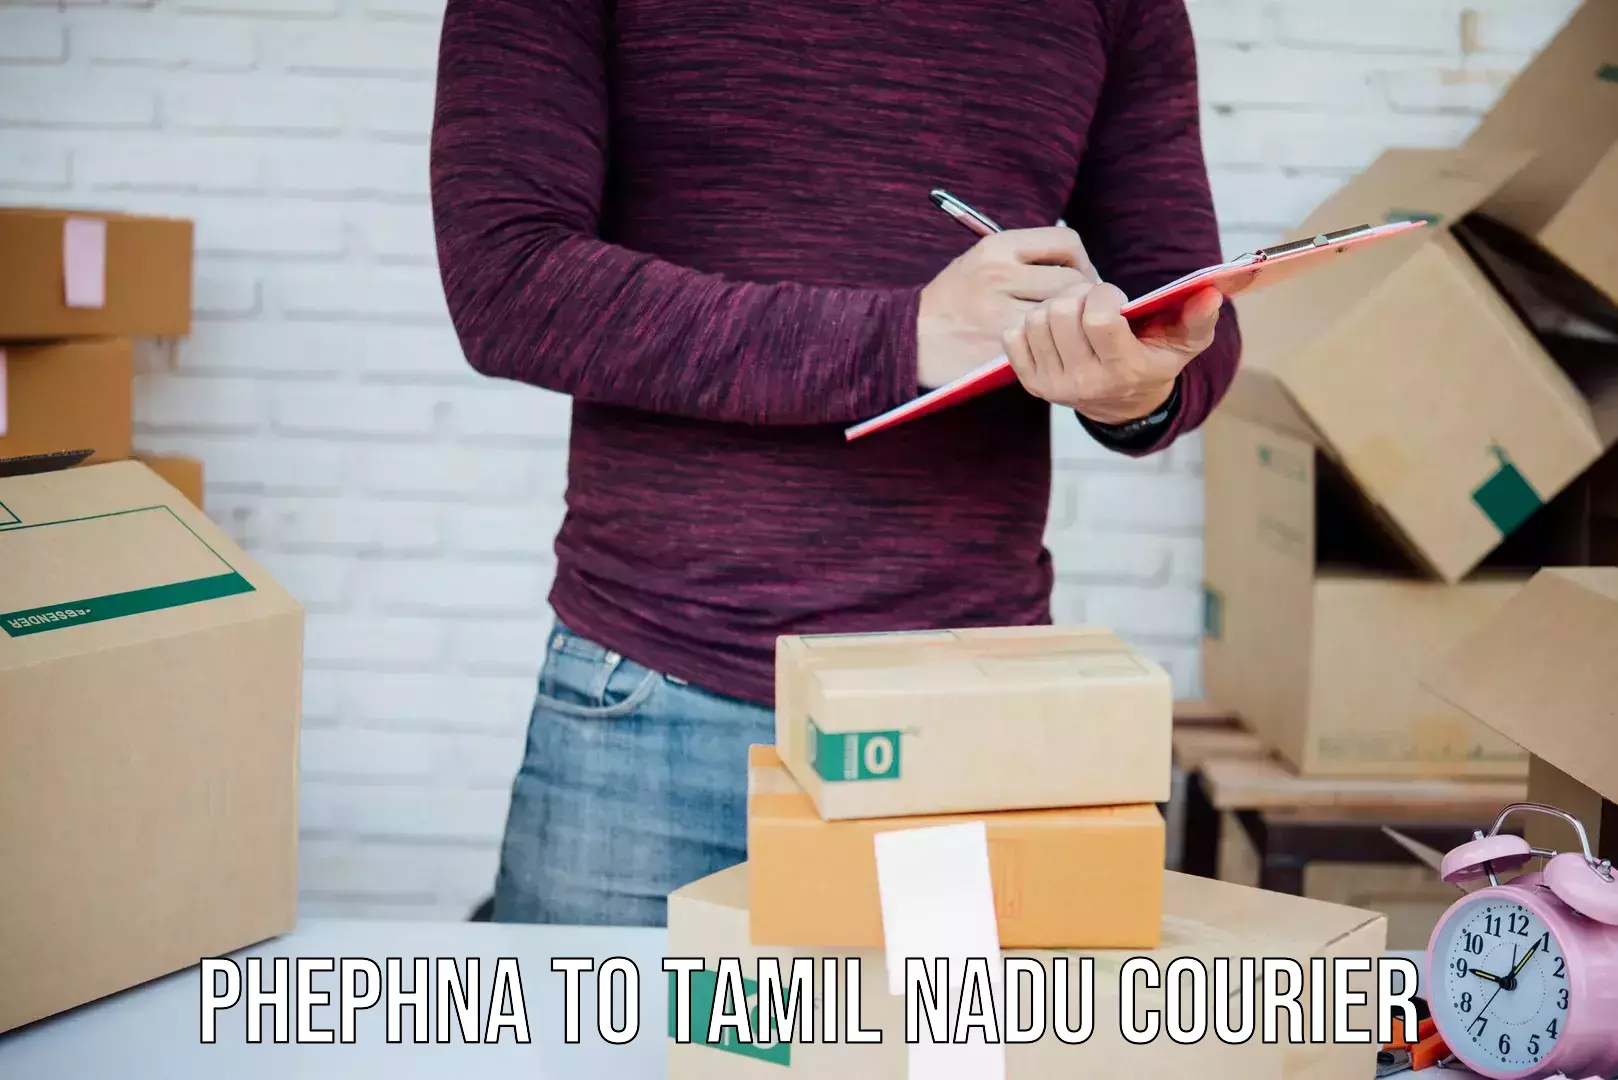 Customized delivery options Phephna to Bhavani